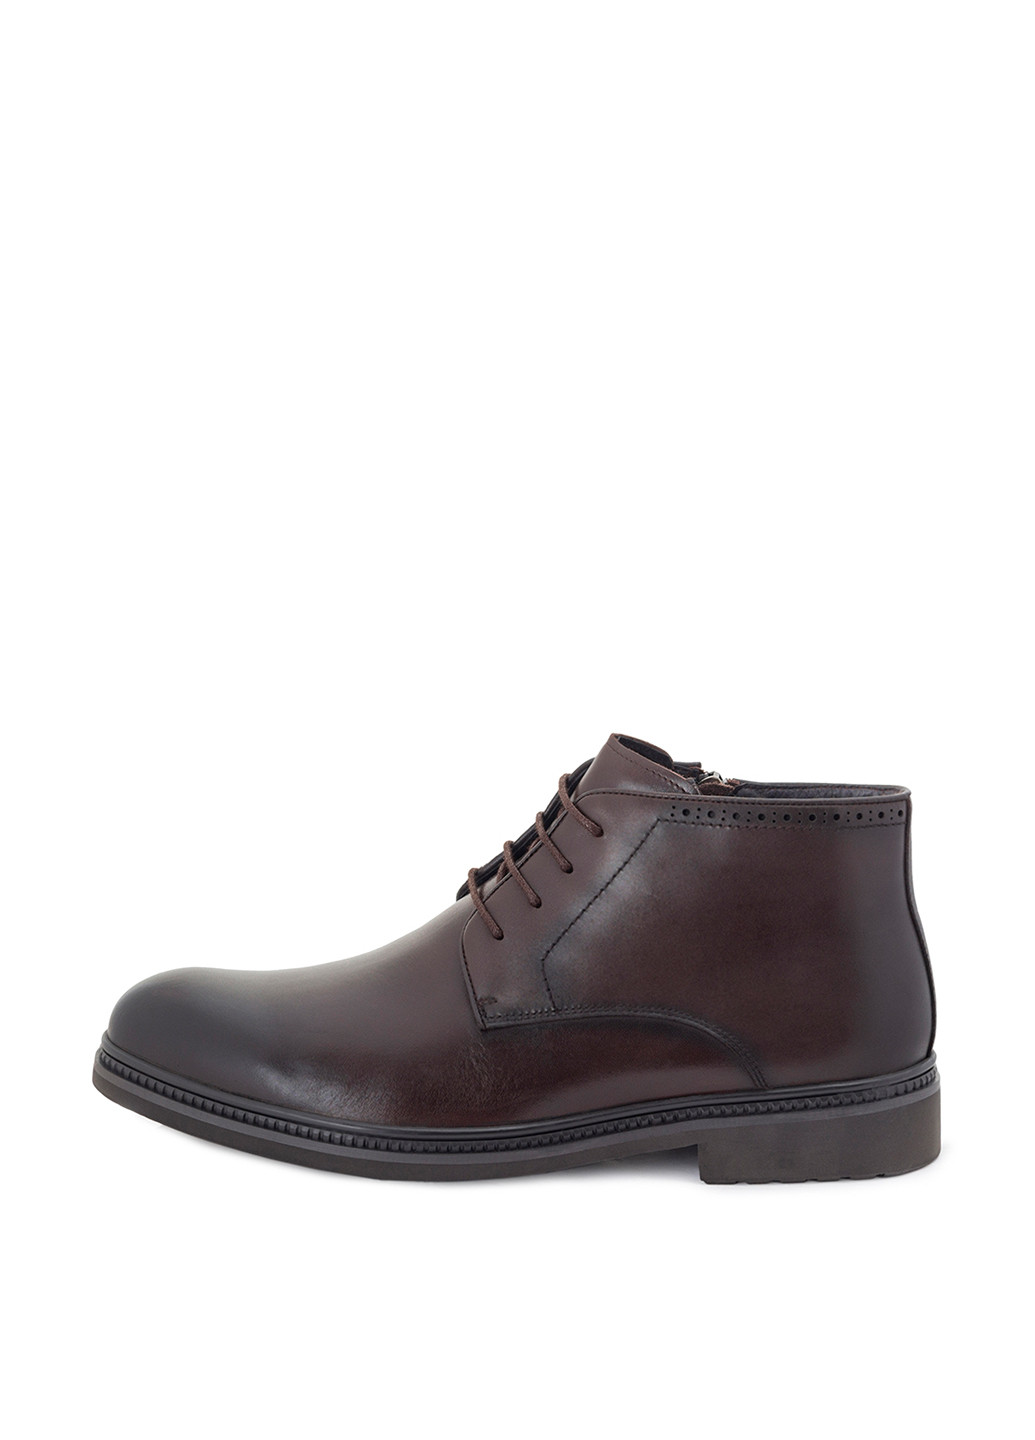 Темно-коричневые зимние ботинки броги Tomfrie